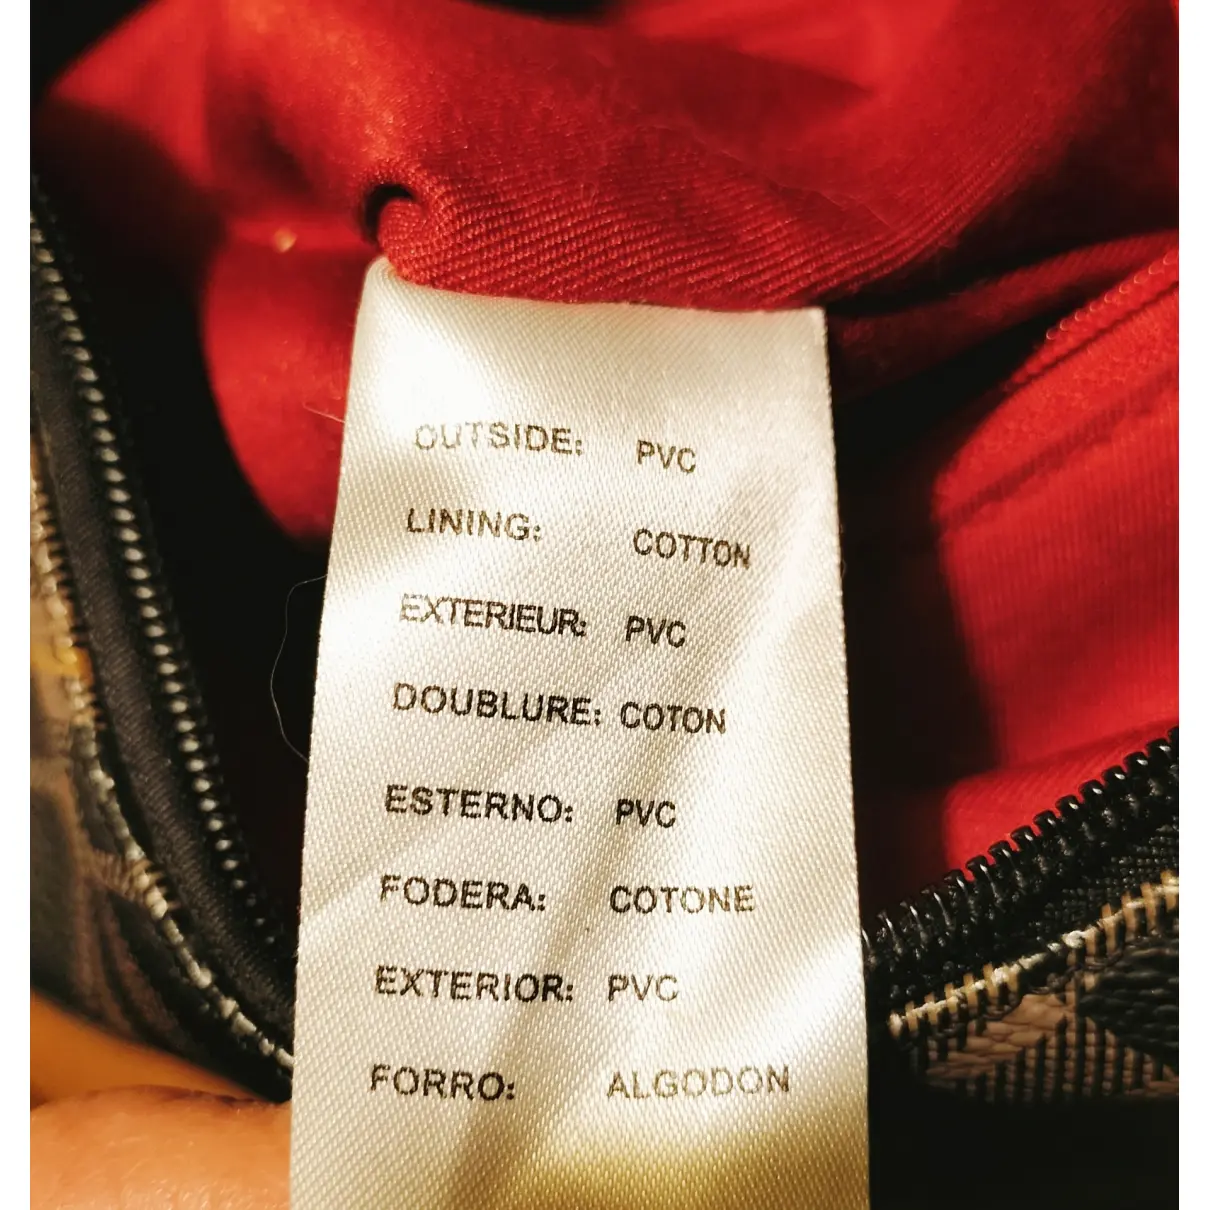 Handbag Pierre Cardin - Vintage